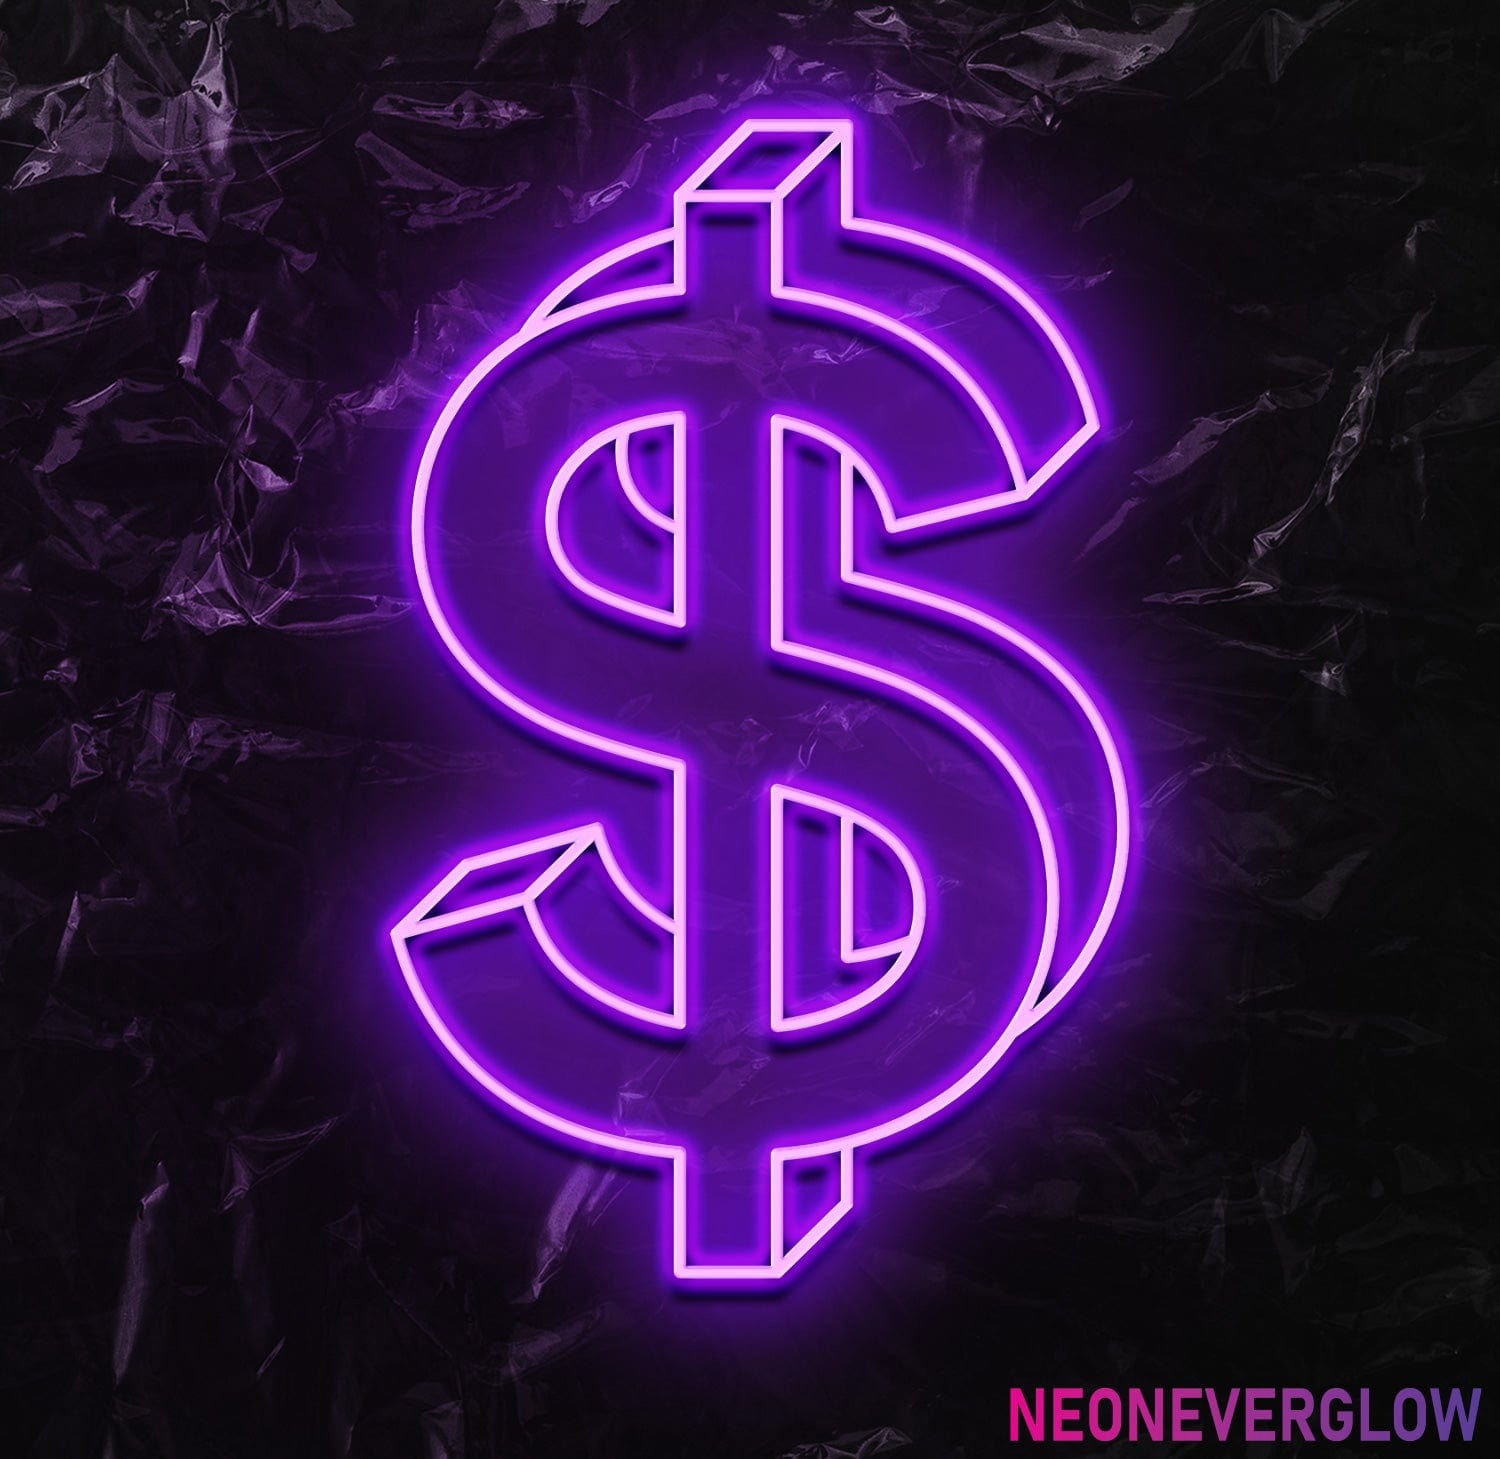 " $ " LED Neonschild - NEONEVERGLOW